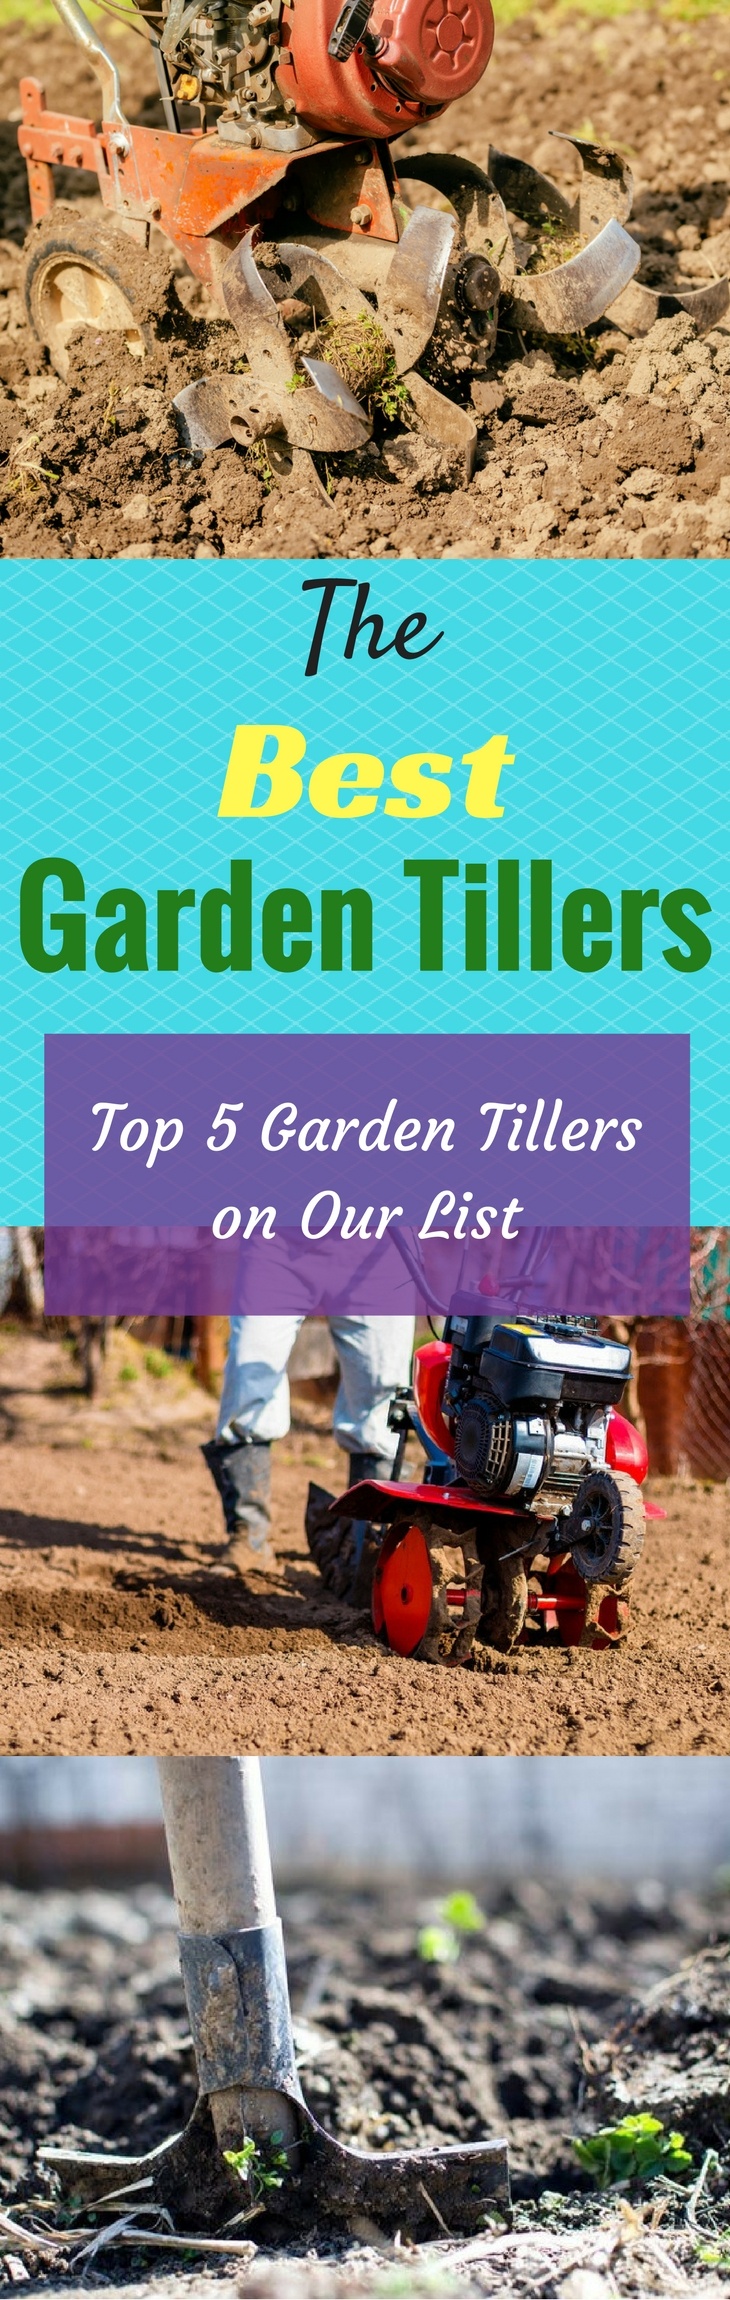 The Best Garden Tillers Top 5 Garden Tillers On Our List